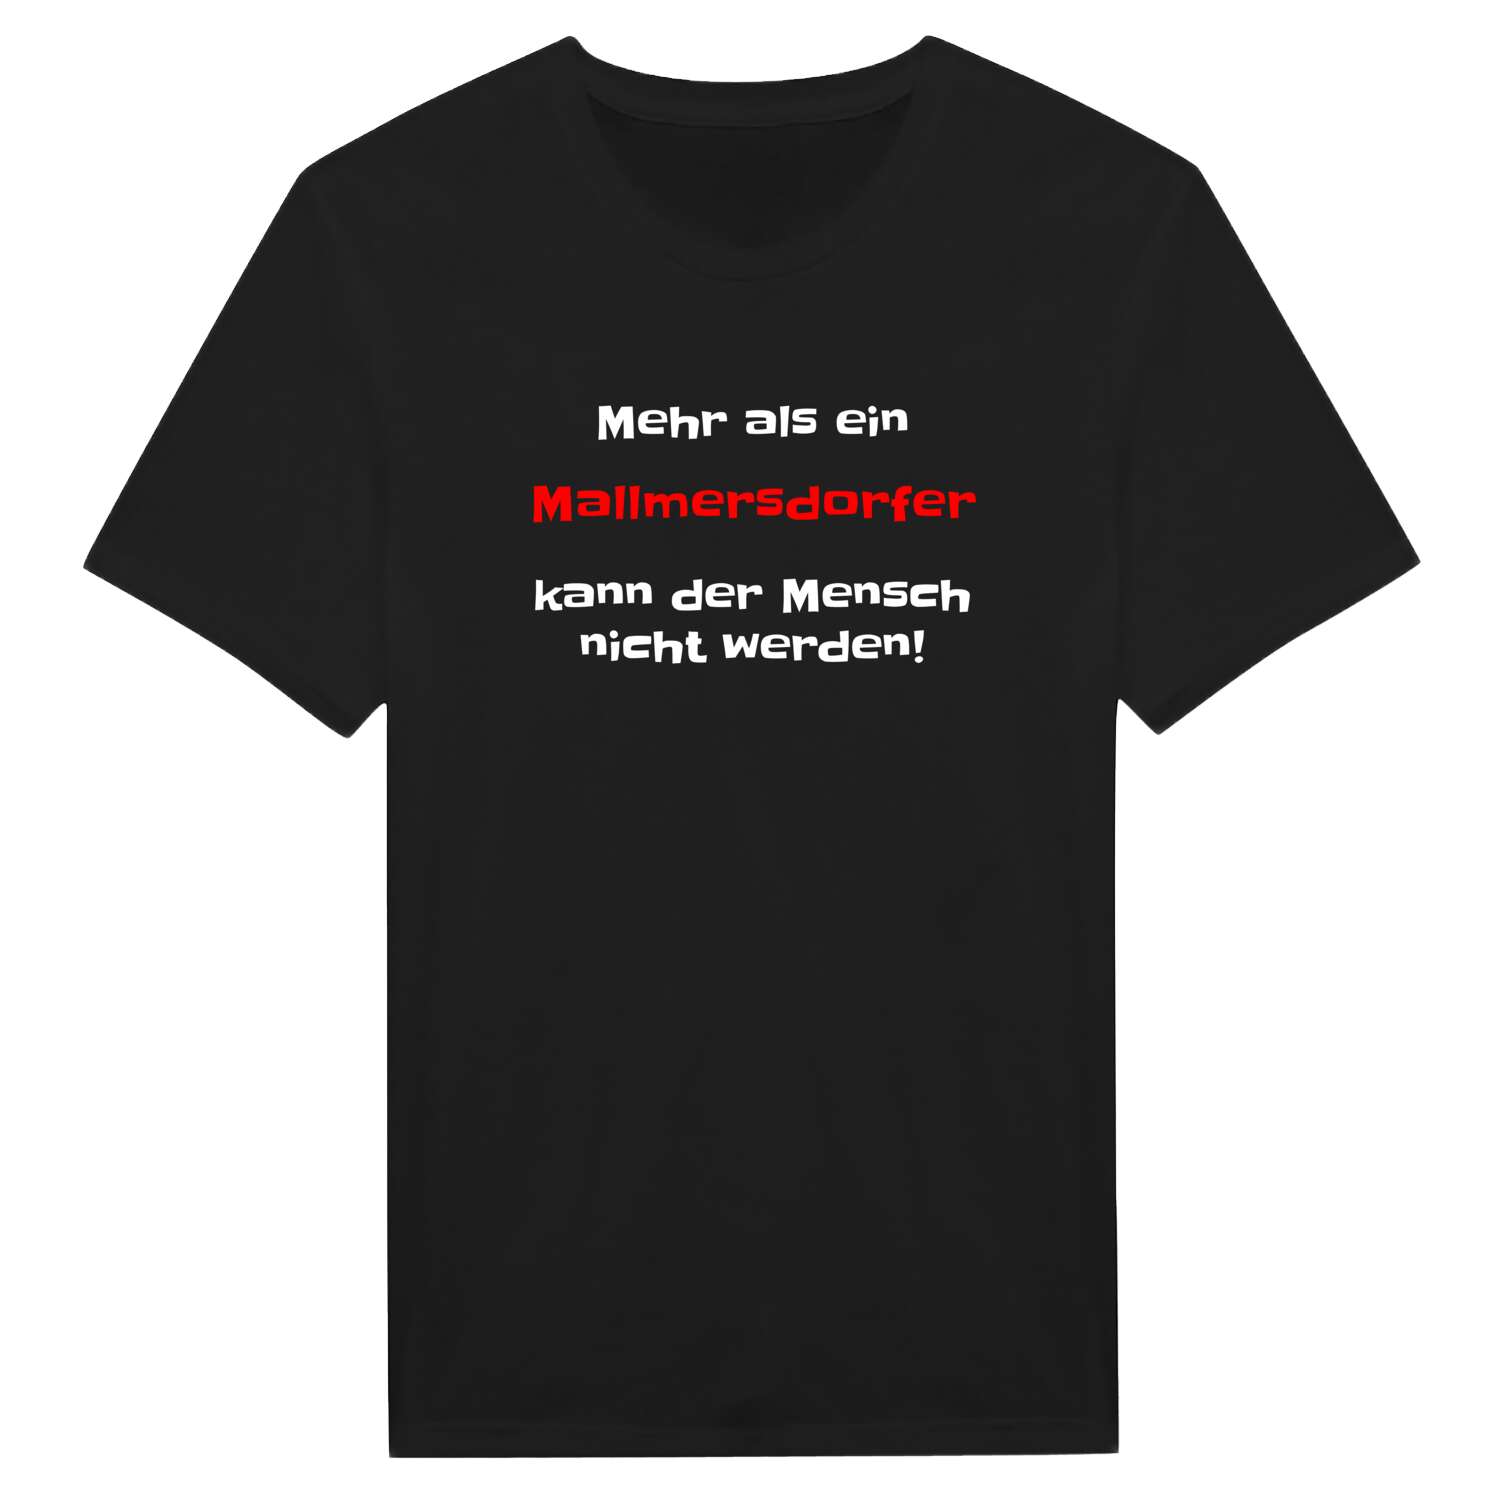 Mallmersdorf T-Shirt »Mehr als ein«